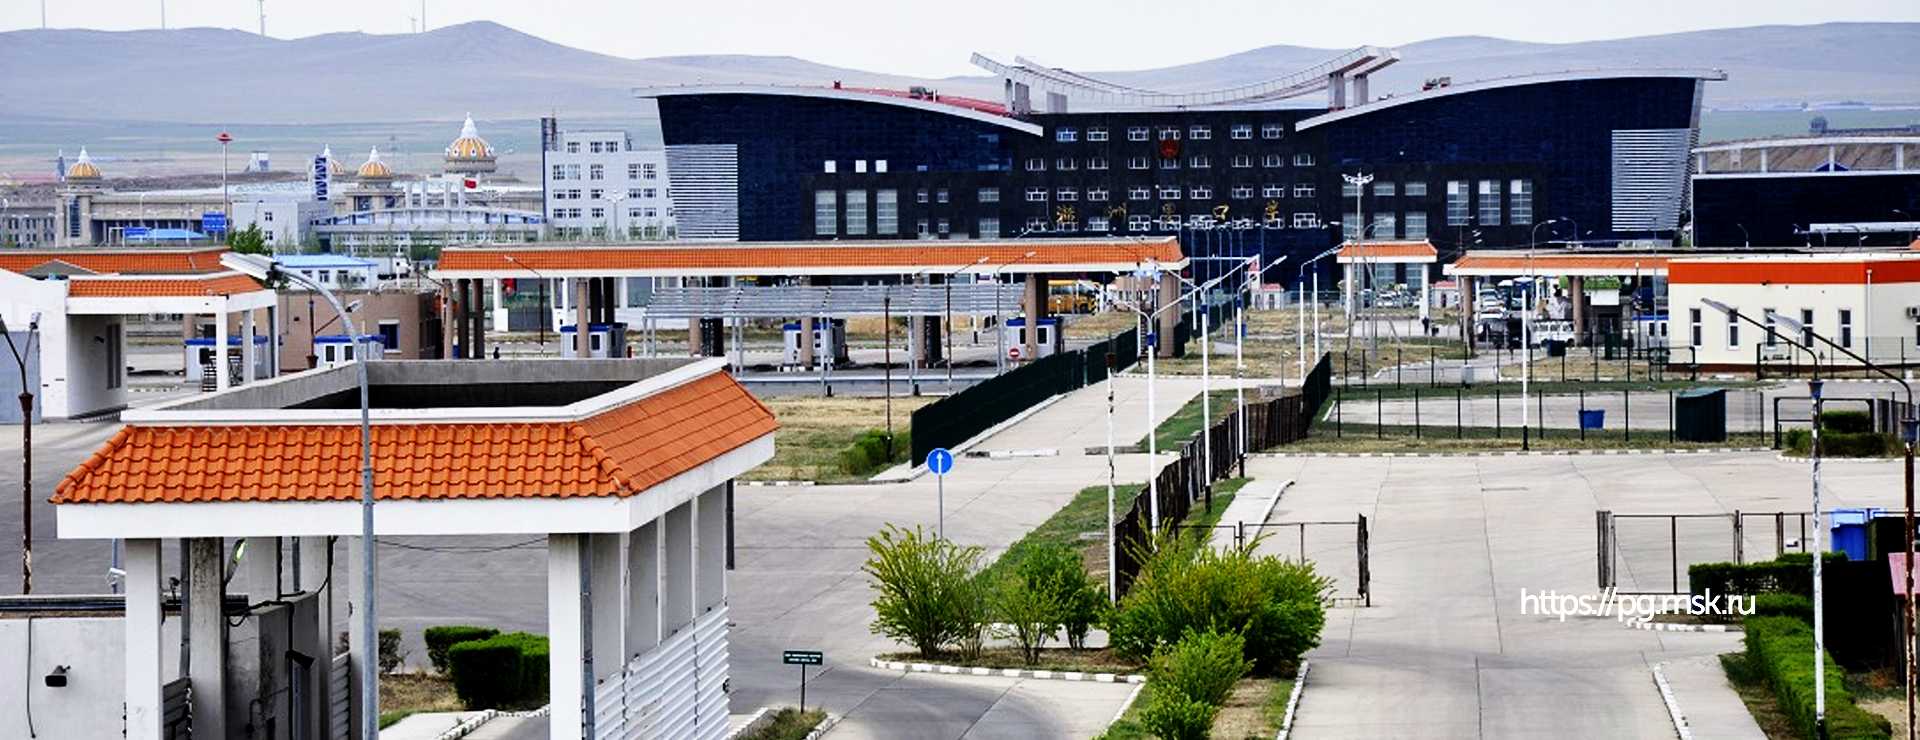 Автовокзал забайкальск-манчжурия - забайкальский край